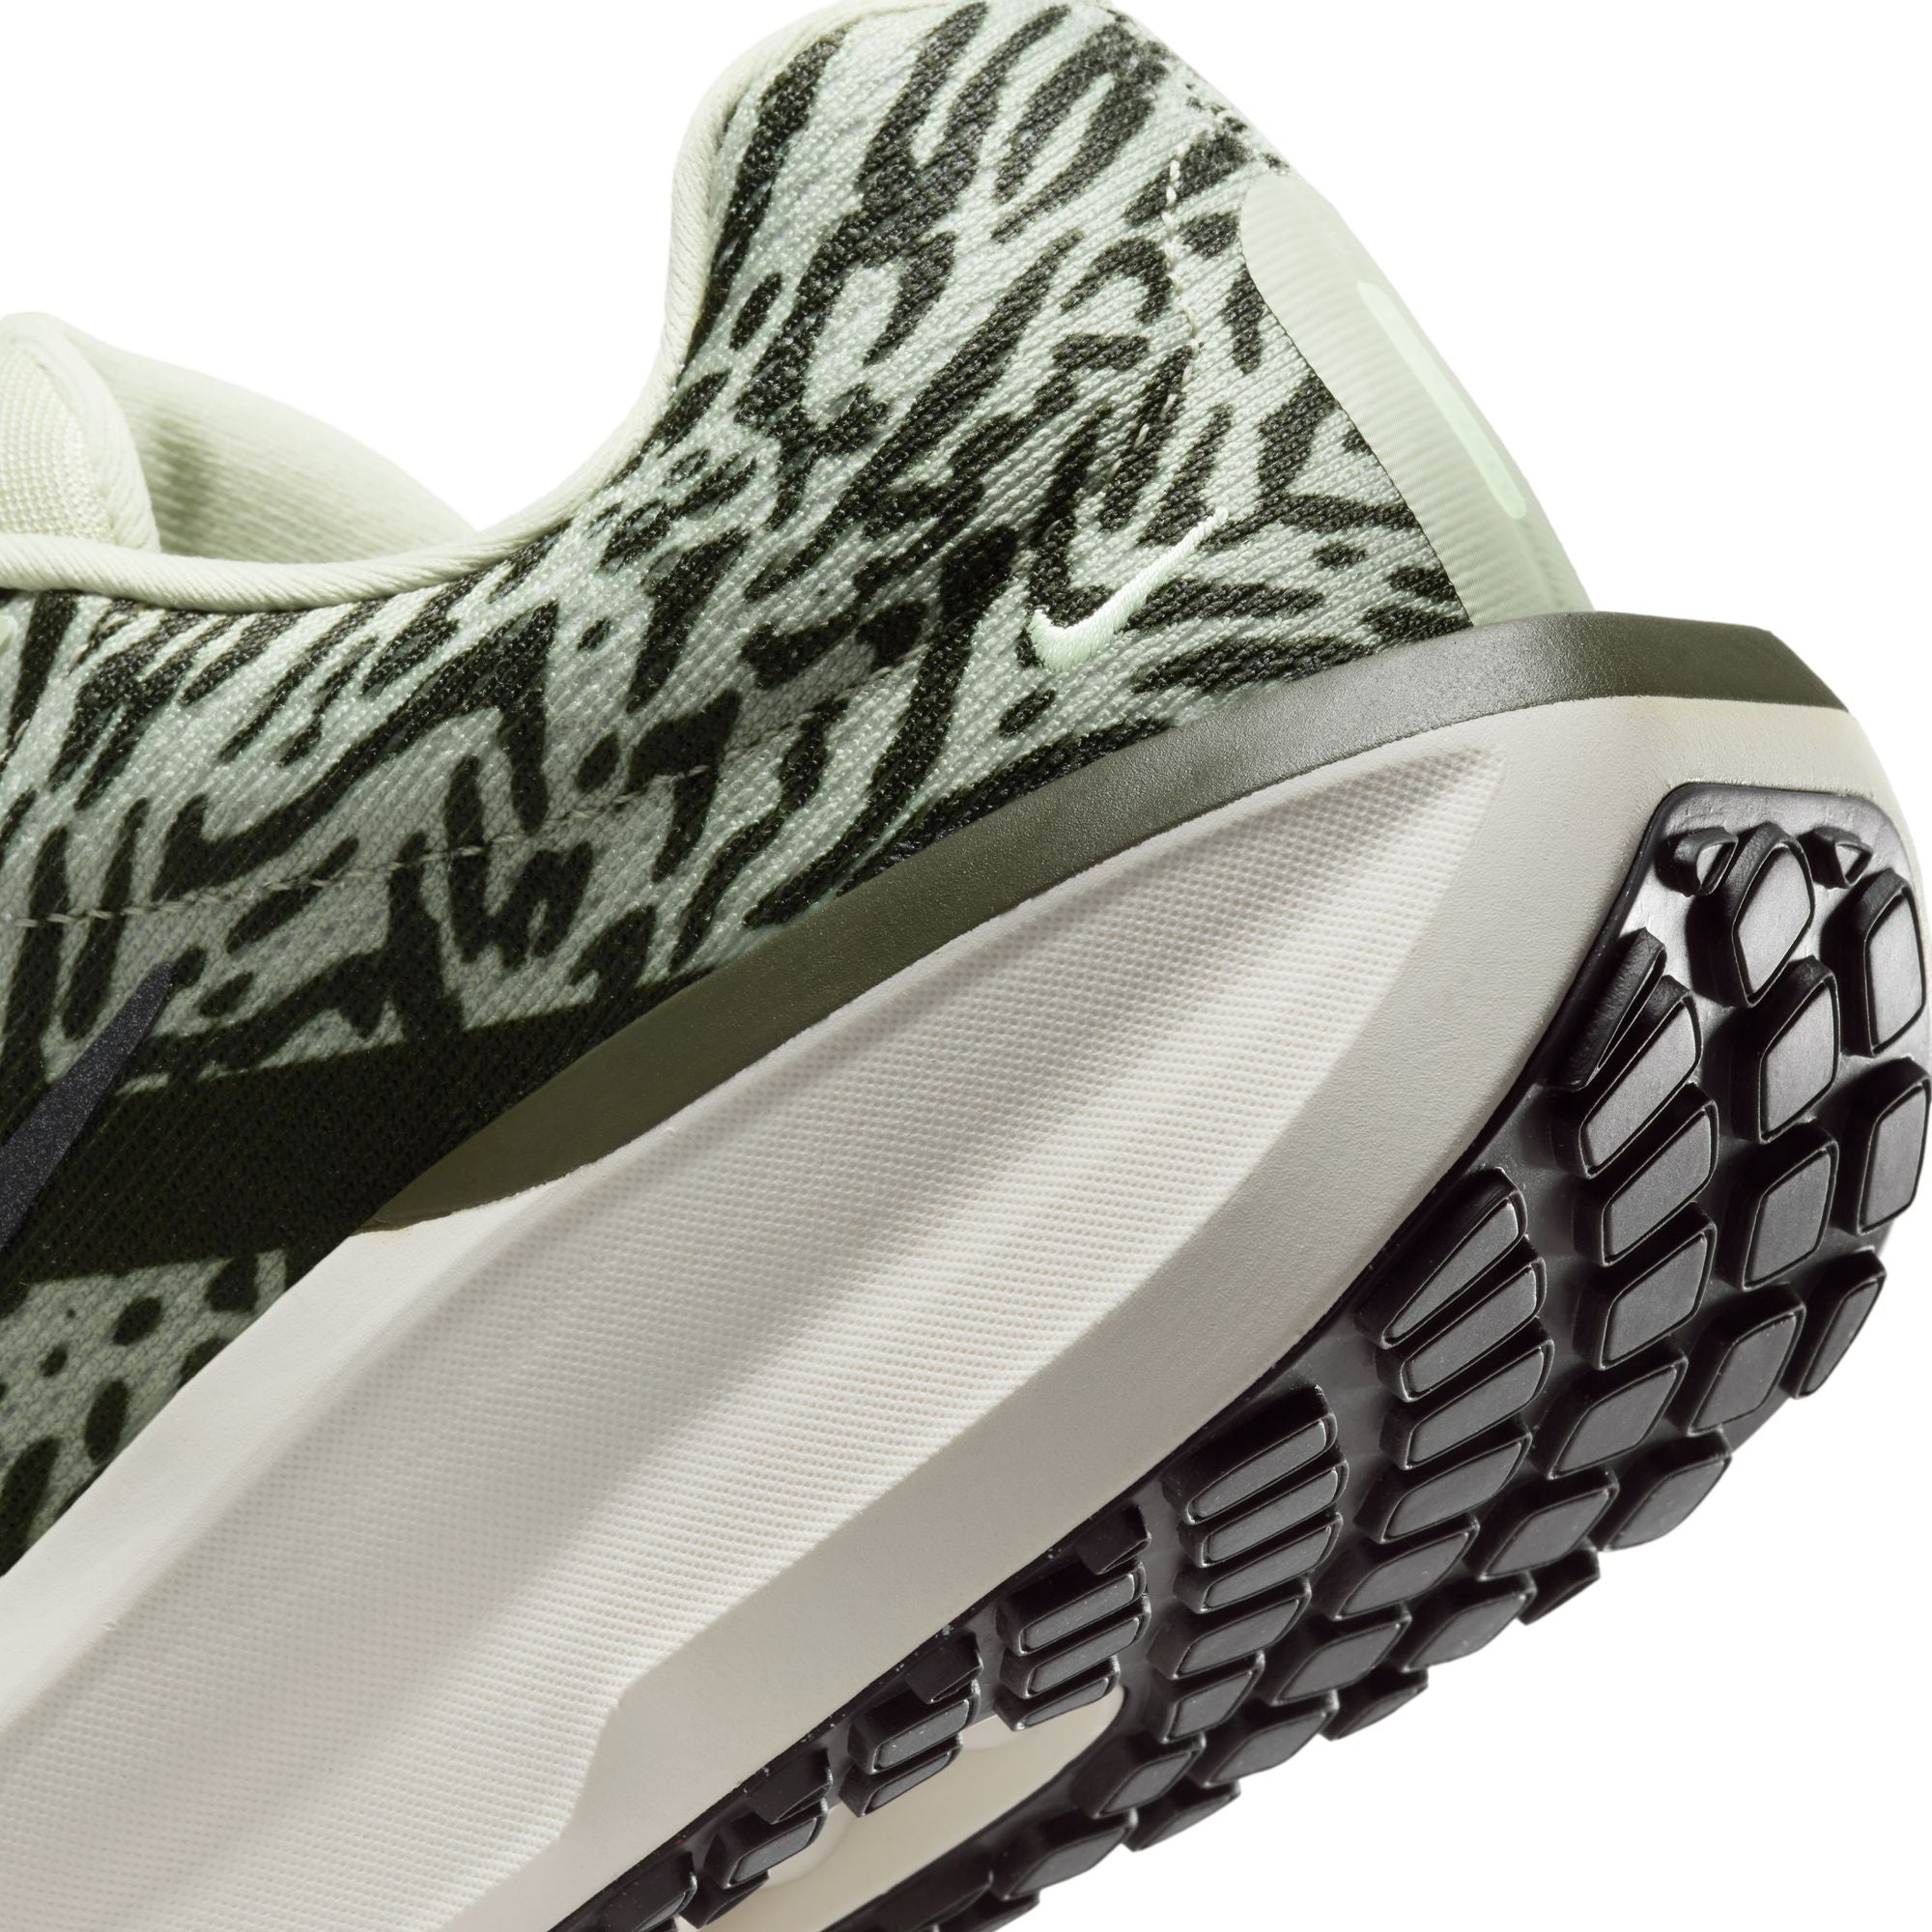 Nike Winflo 11 Premium Women's Road Running Shoes